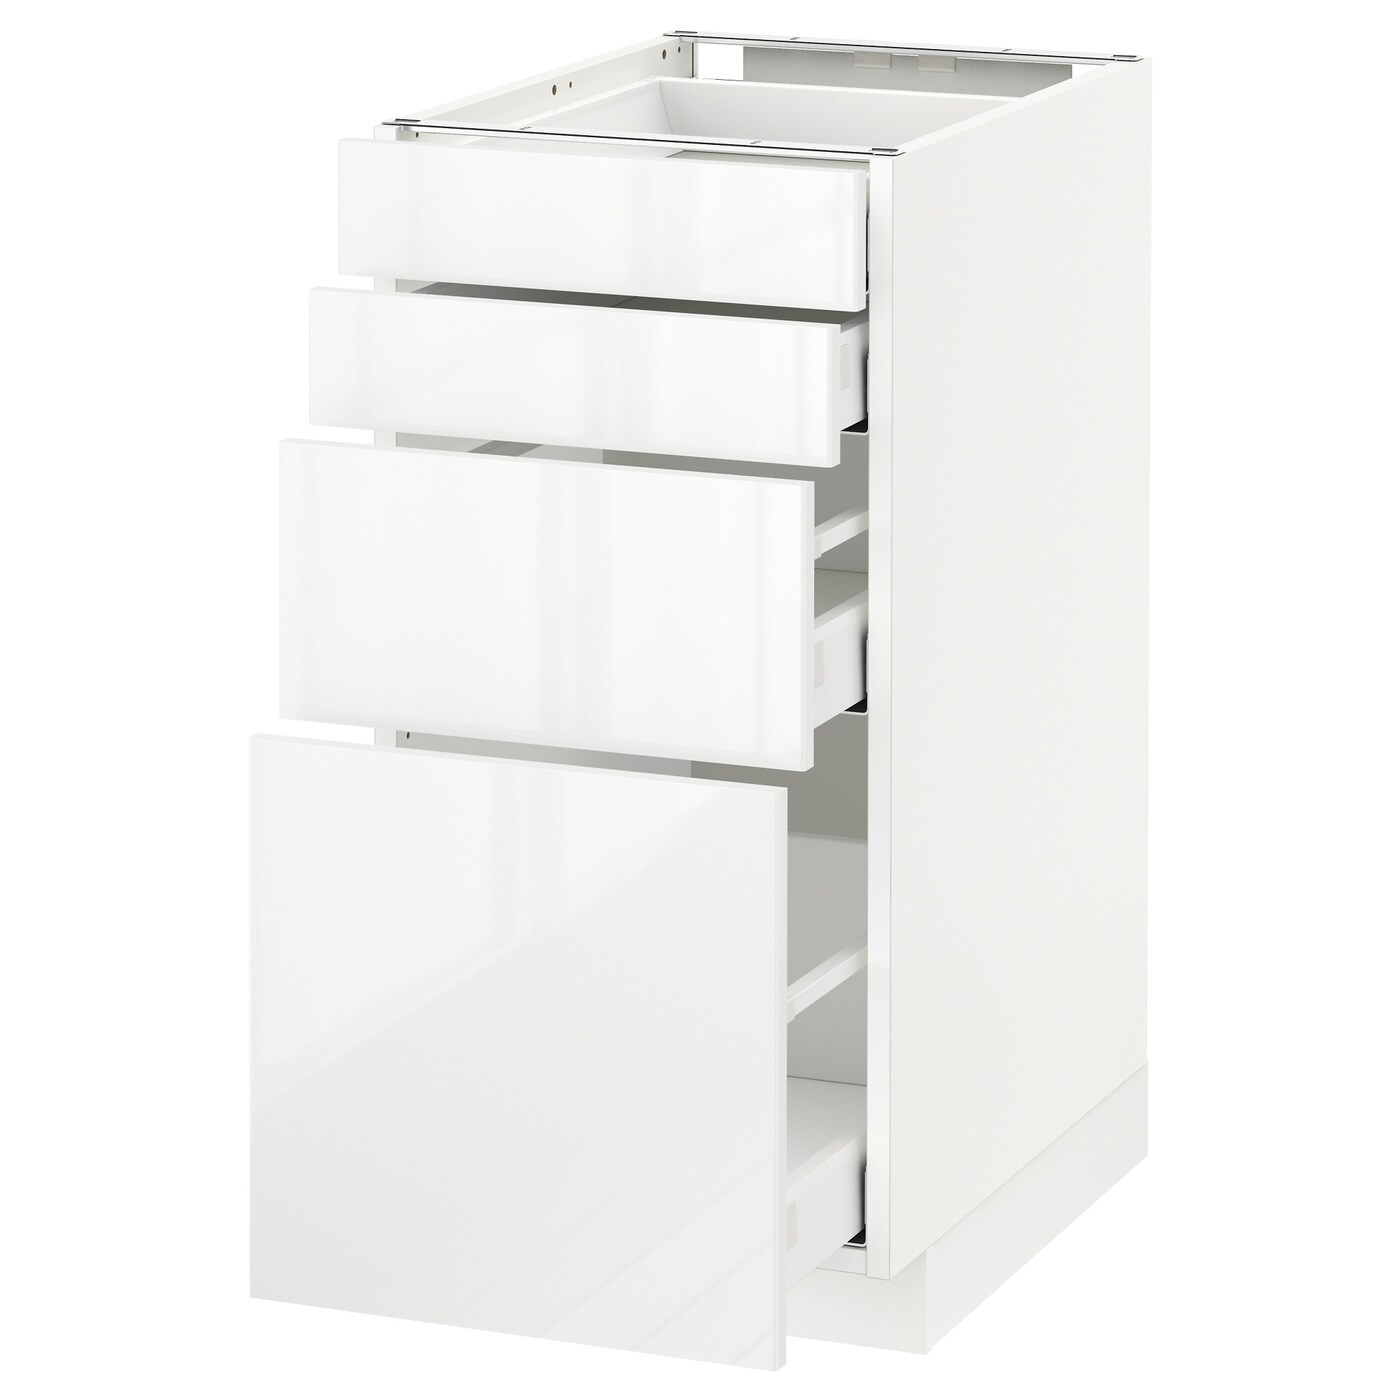 Напольный кухонный шкаф  - IKEA METOD MAXIMERA, 88x61,8x40см, белый, МЕТОД МАКСИМЕРА ИКЕА